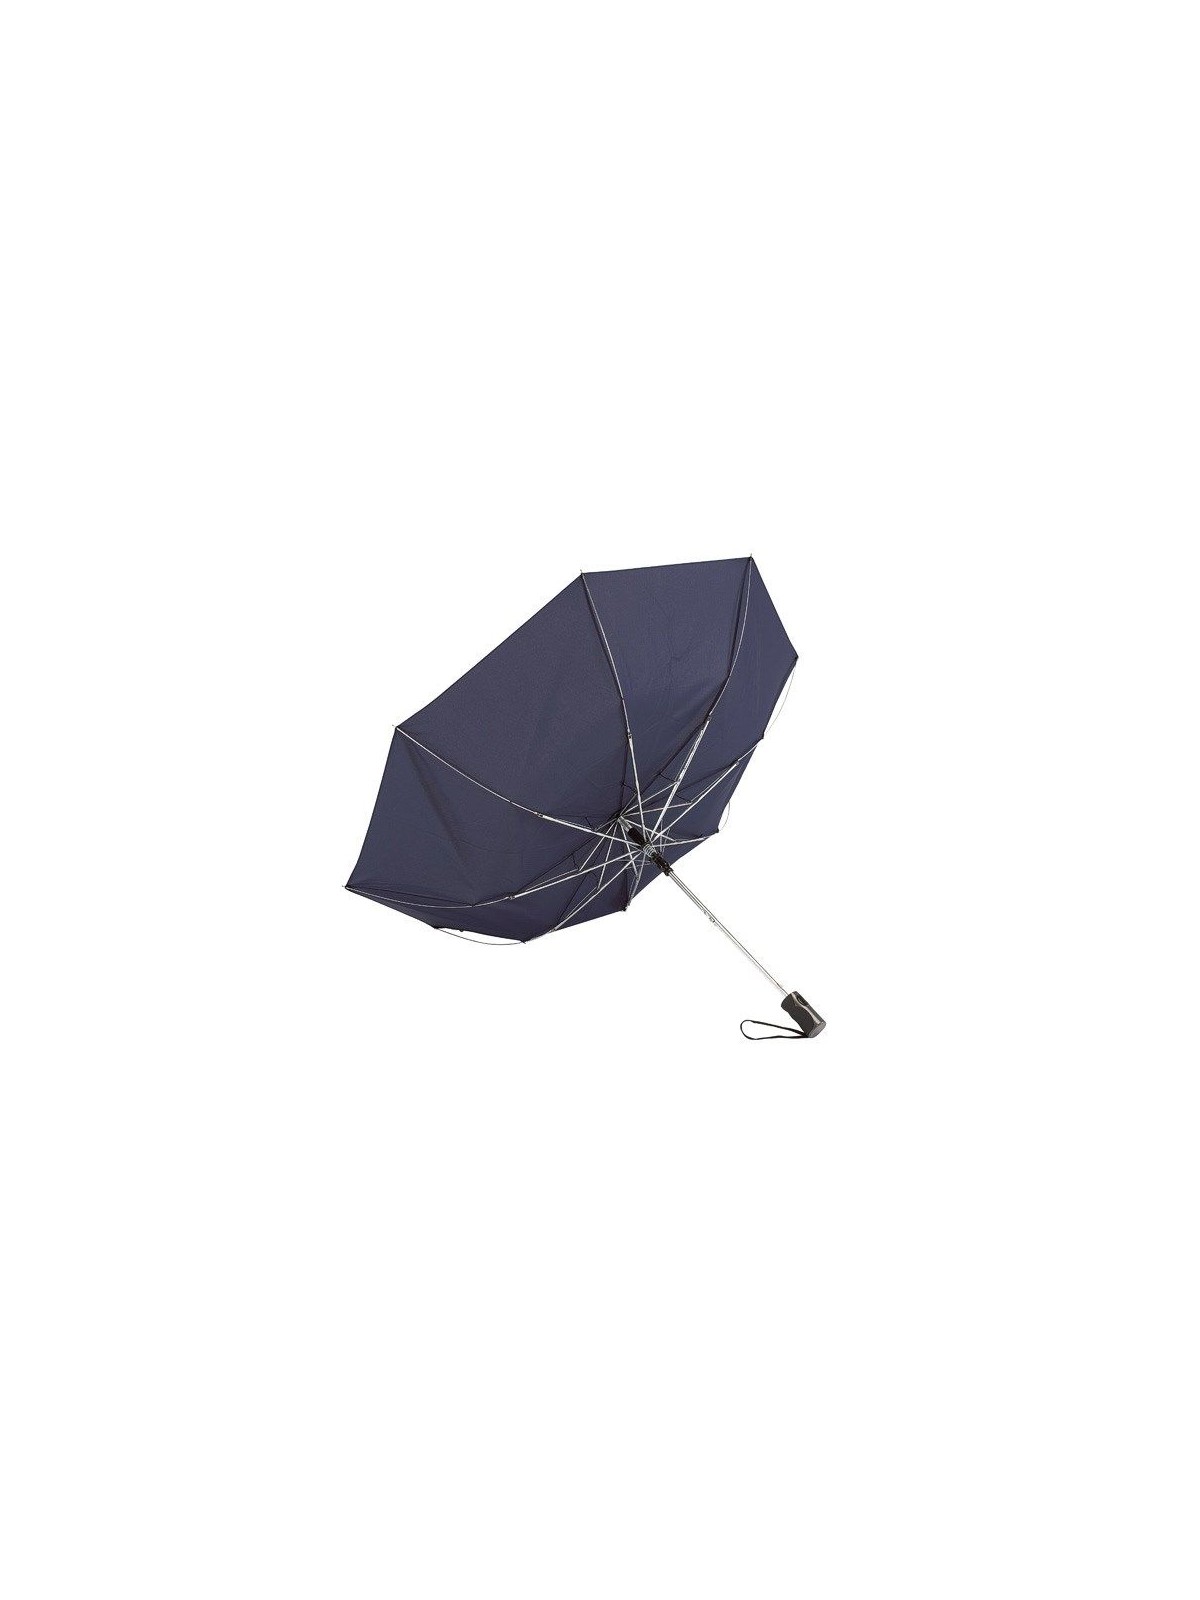 34-505 Parapluie pliant Mister personnalisé